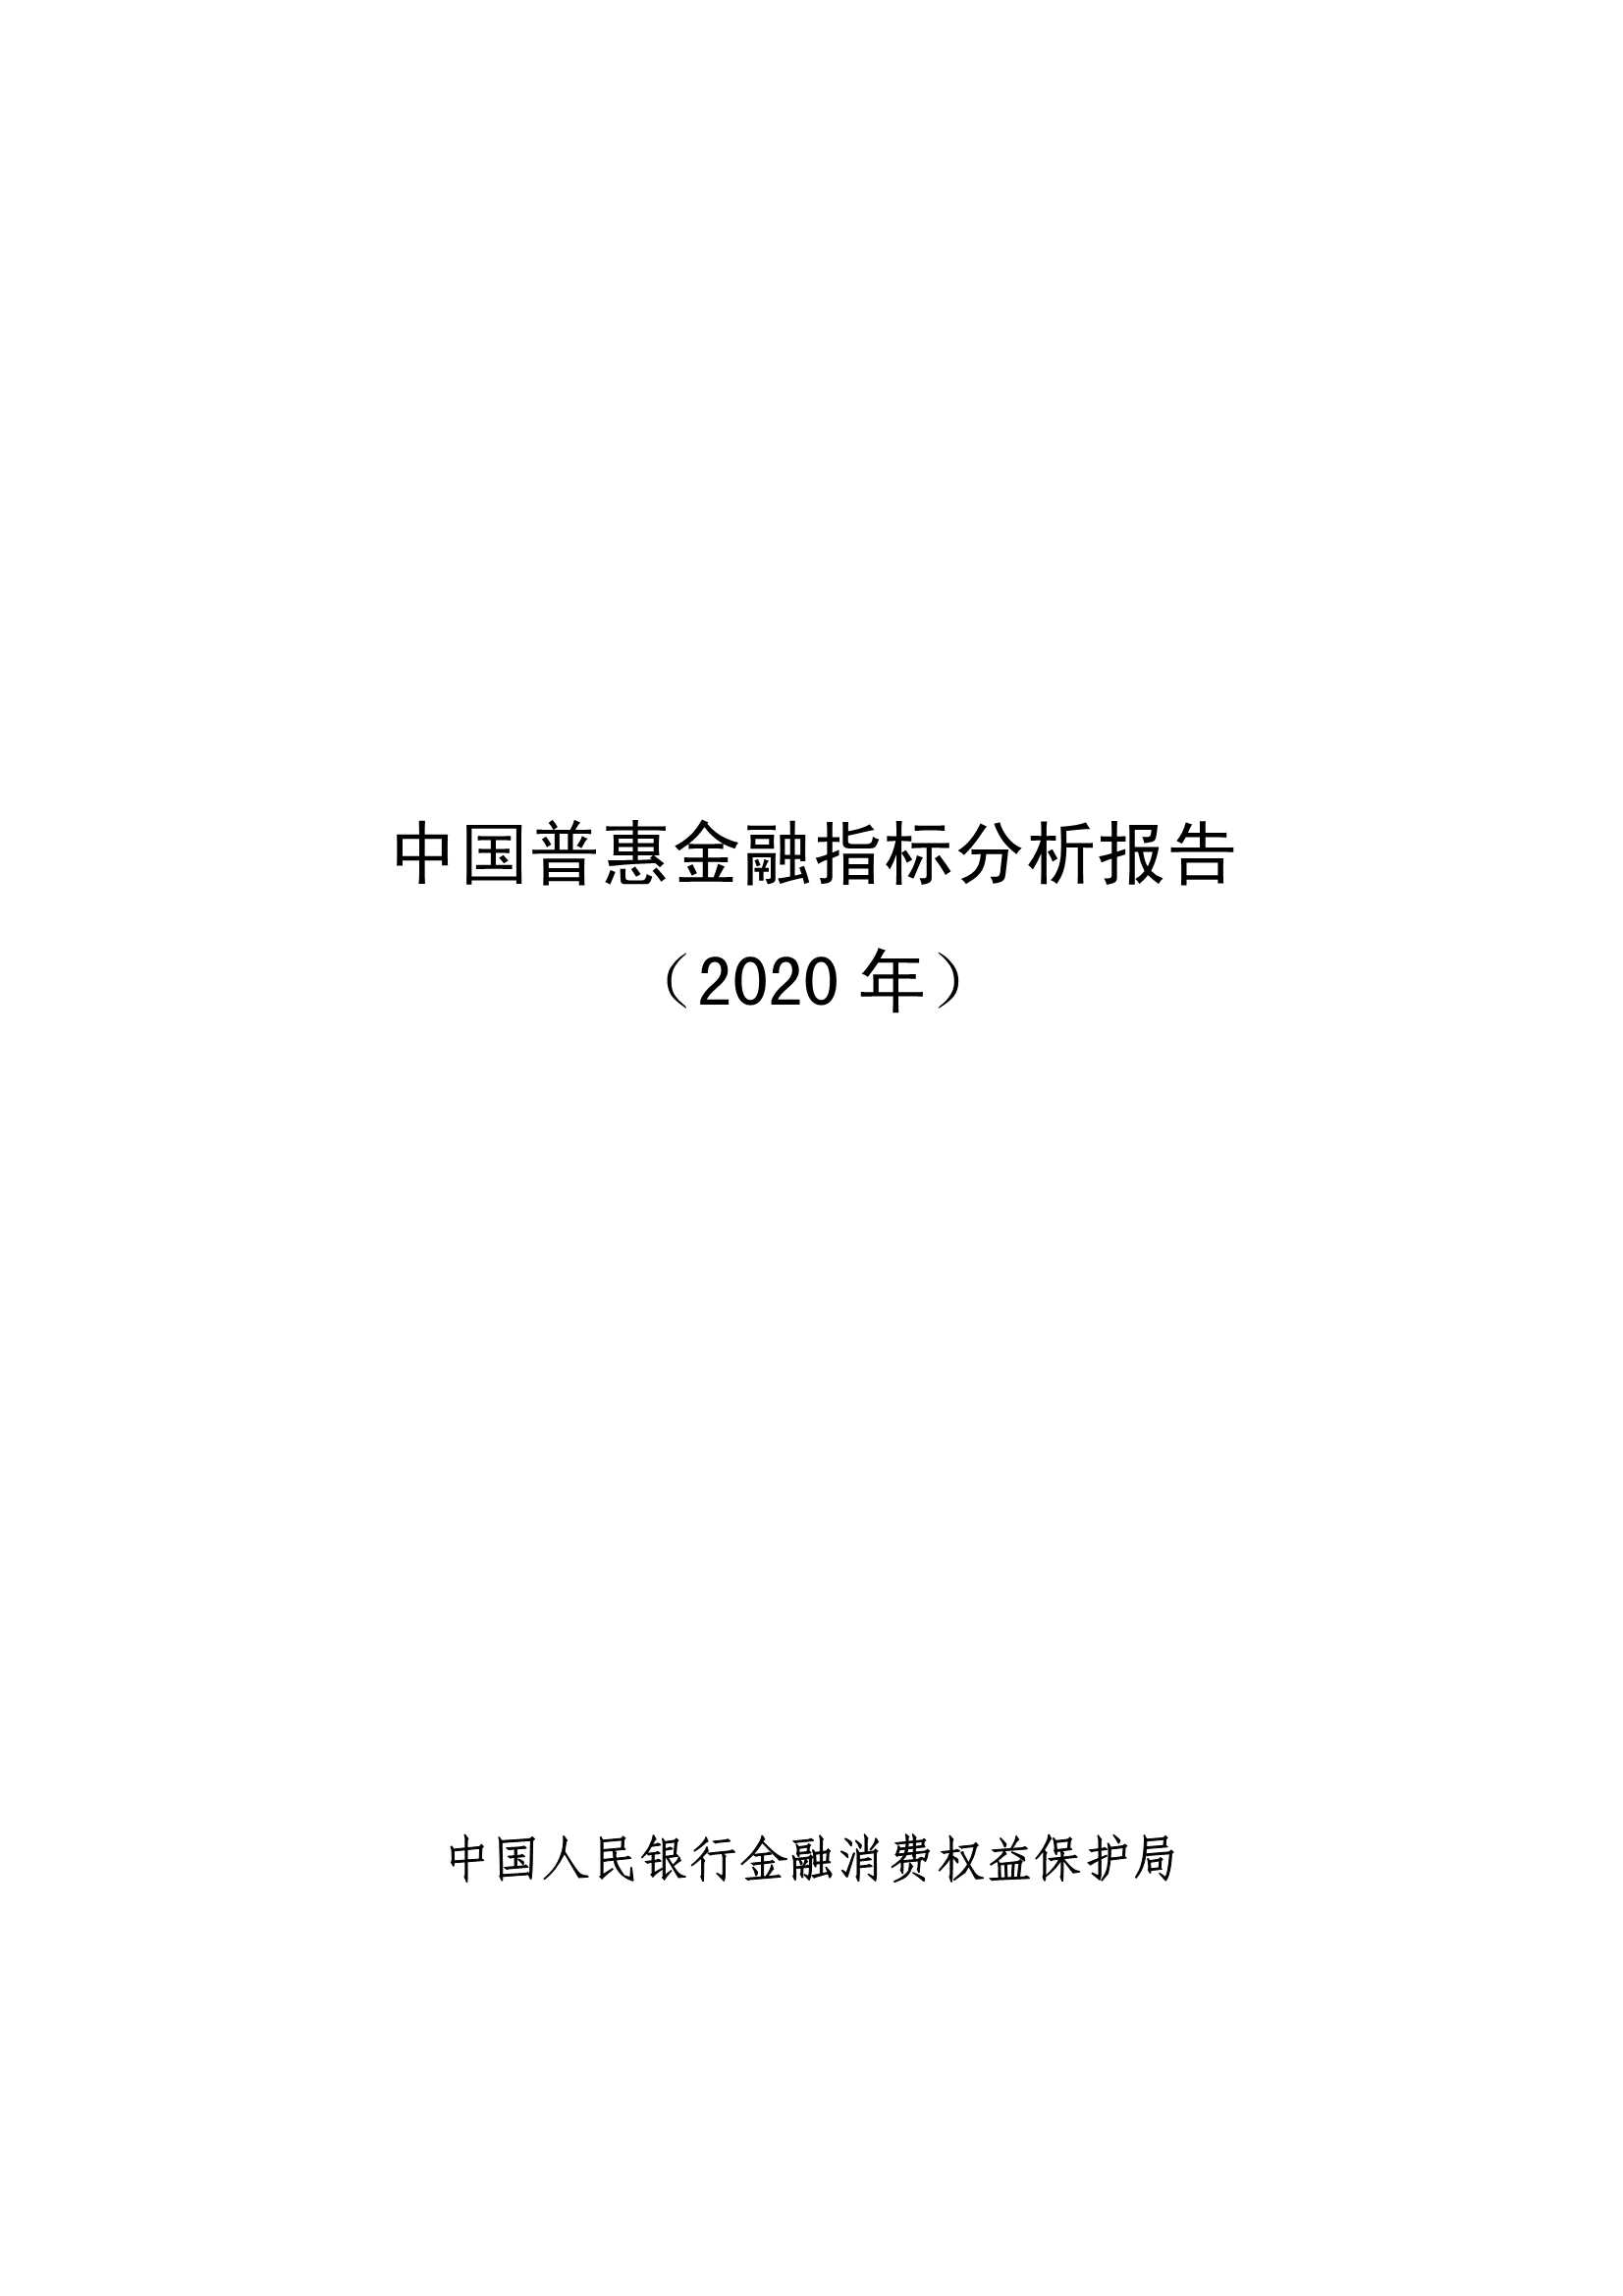 央行-中国普惠金融指标分析报告（2020年）-2021.09-32页